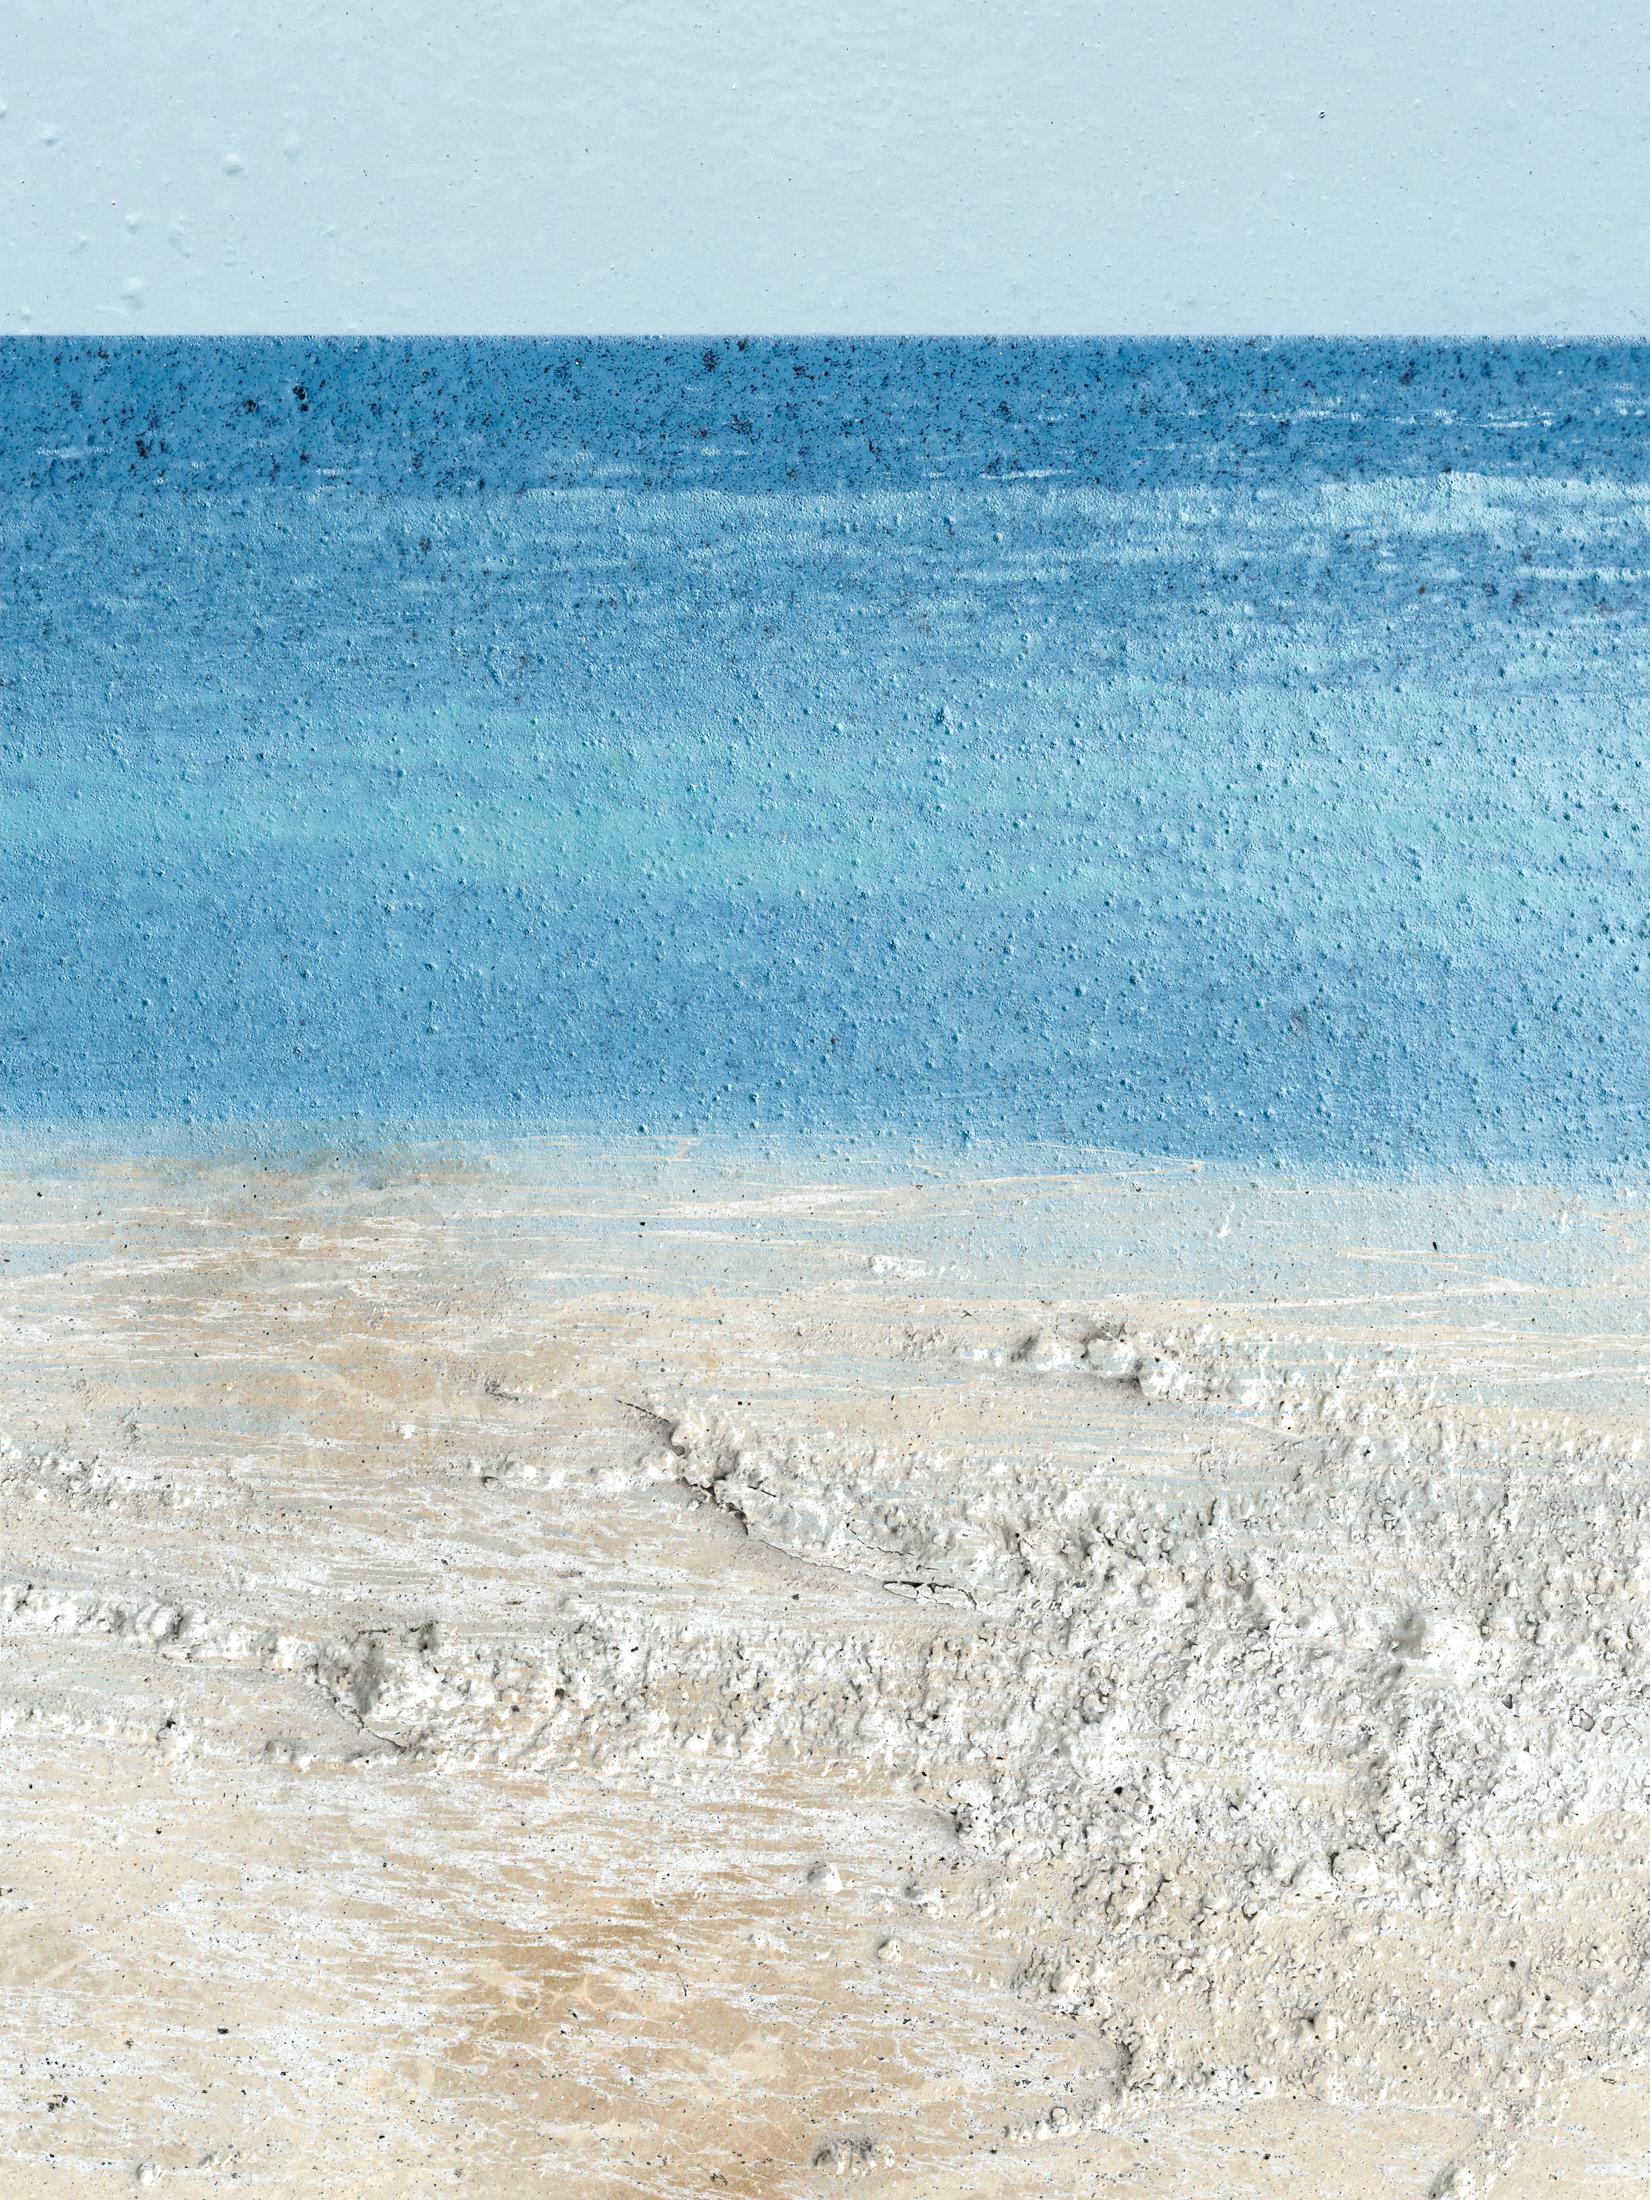 Jennifer McKinnon Landscape Photograph - Uncontained Consumption: Beach Milk Stones - composite photo, beachscape